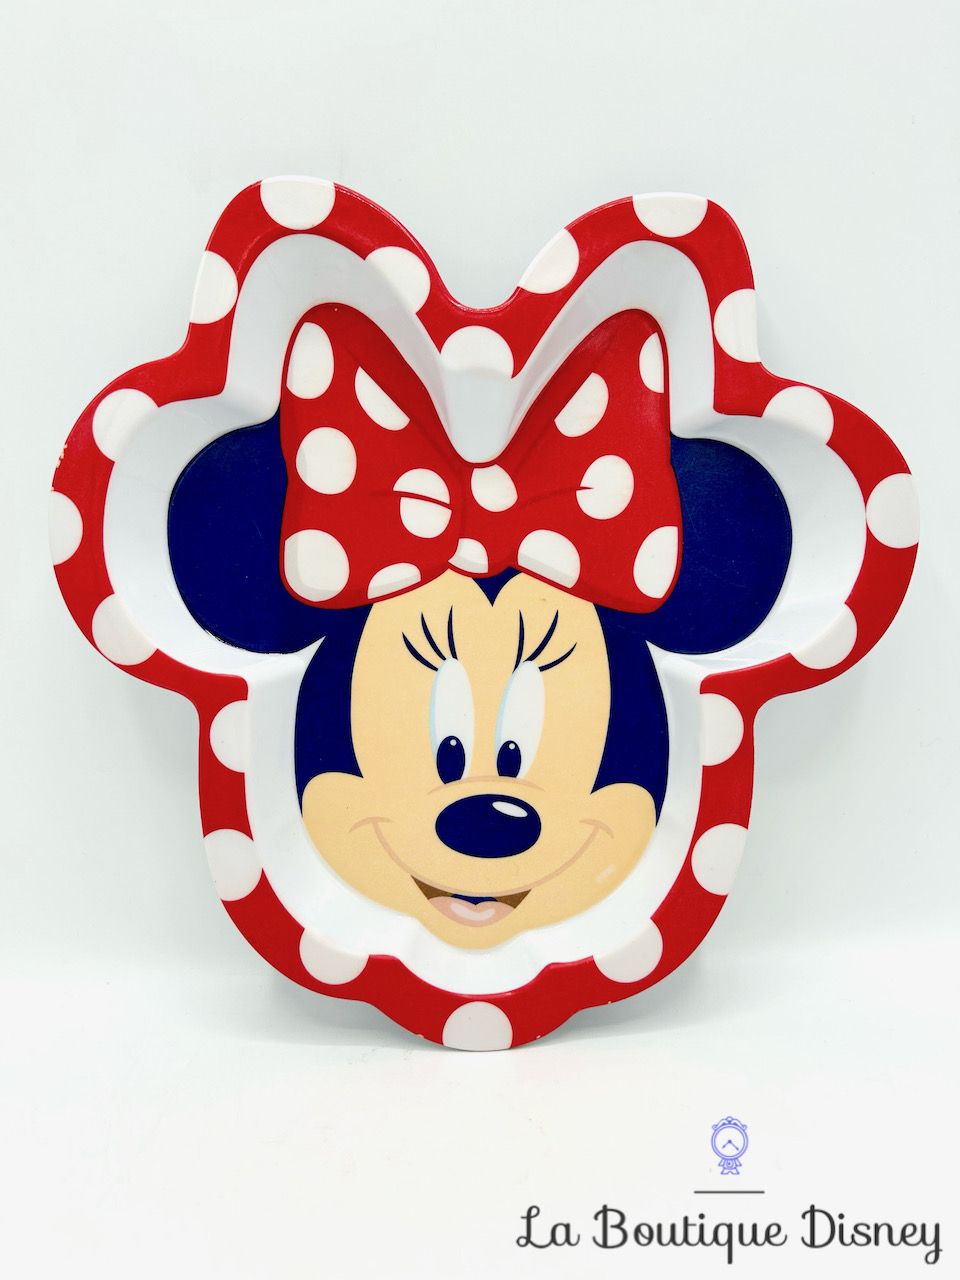 Assiette plastique Minnie Mouse Disney Store Exclusive visage tête rouge blanc